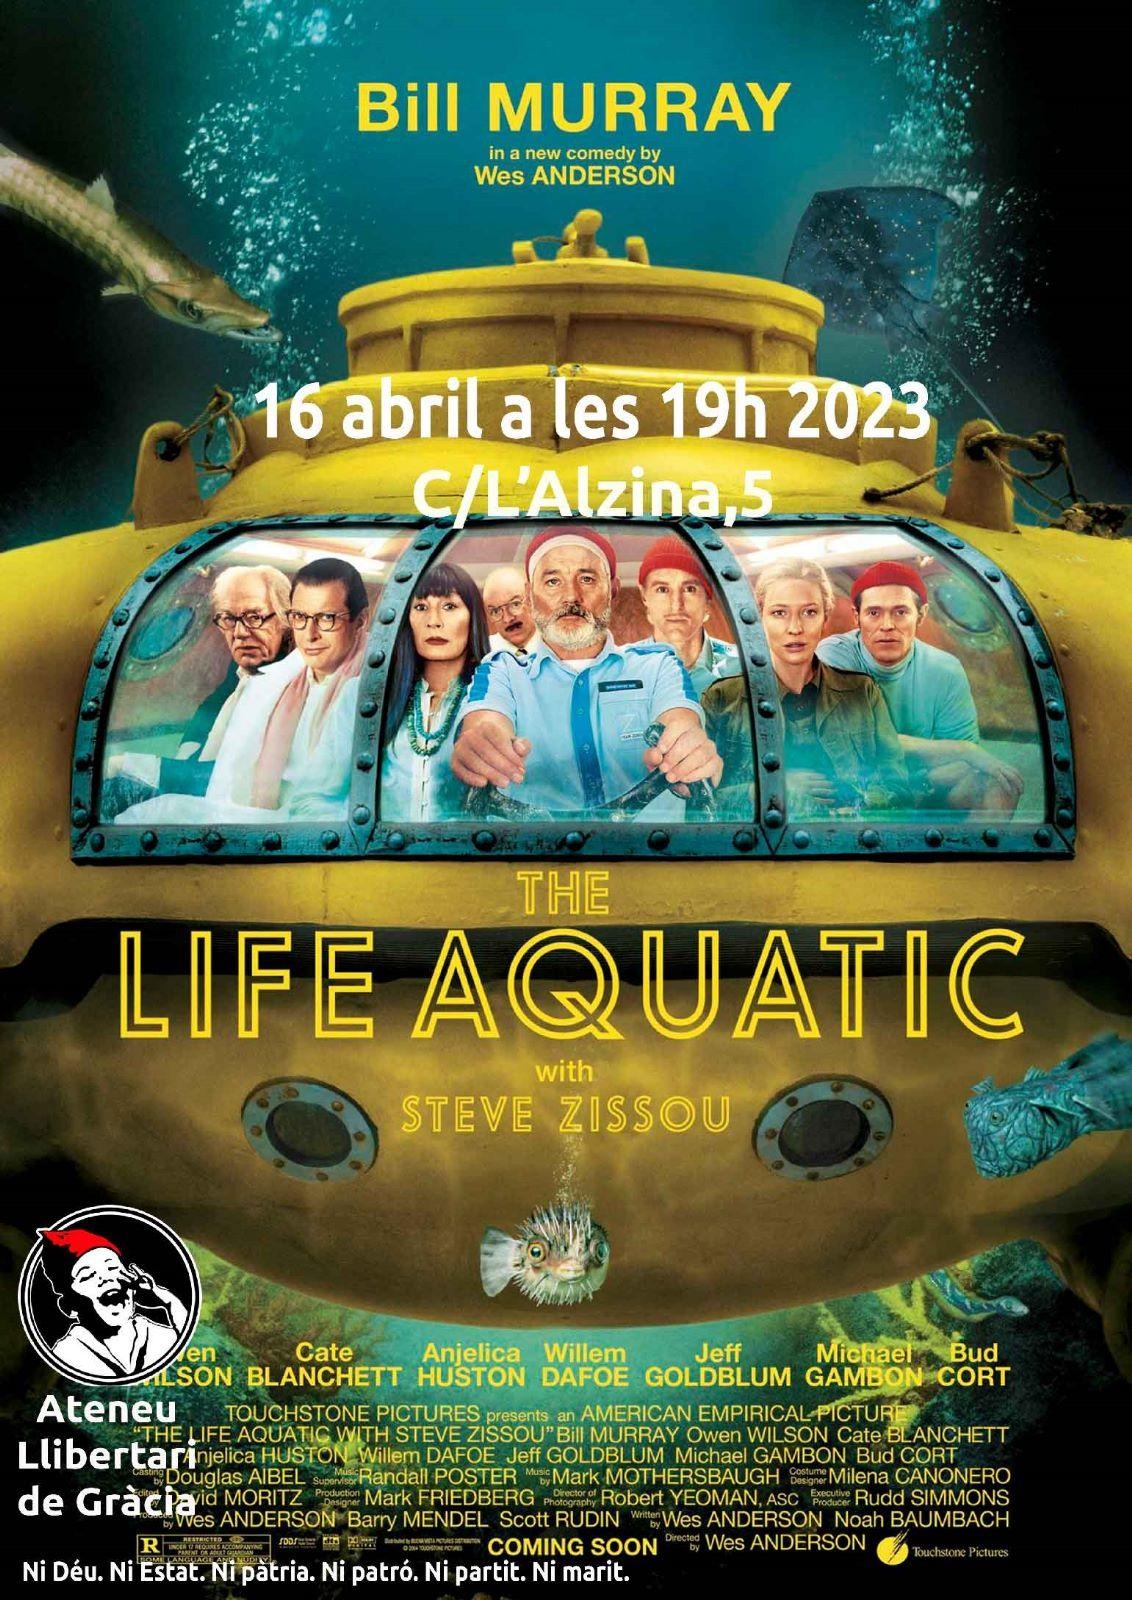 Cinefòrum "Vida acuática" ("The life aquatic with Steve Zissou" Wes Anderson)